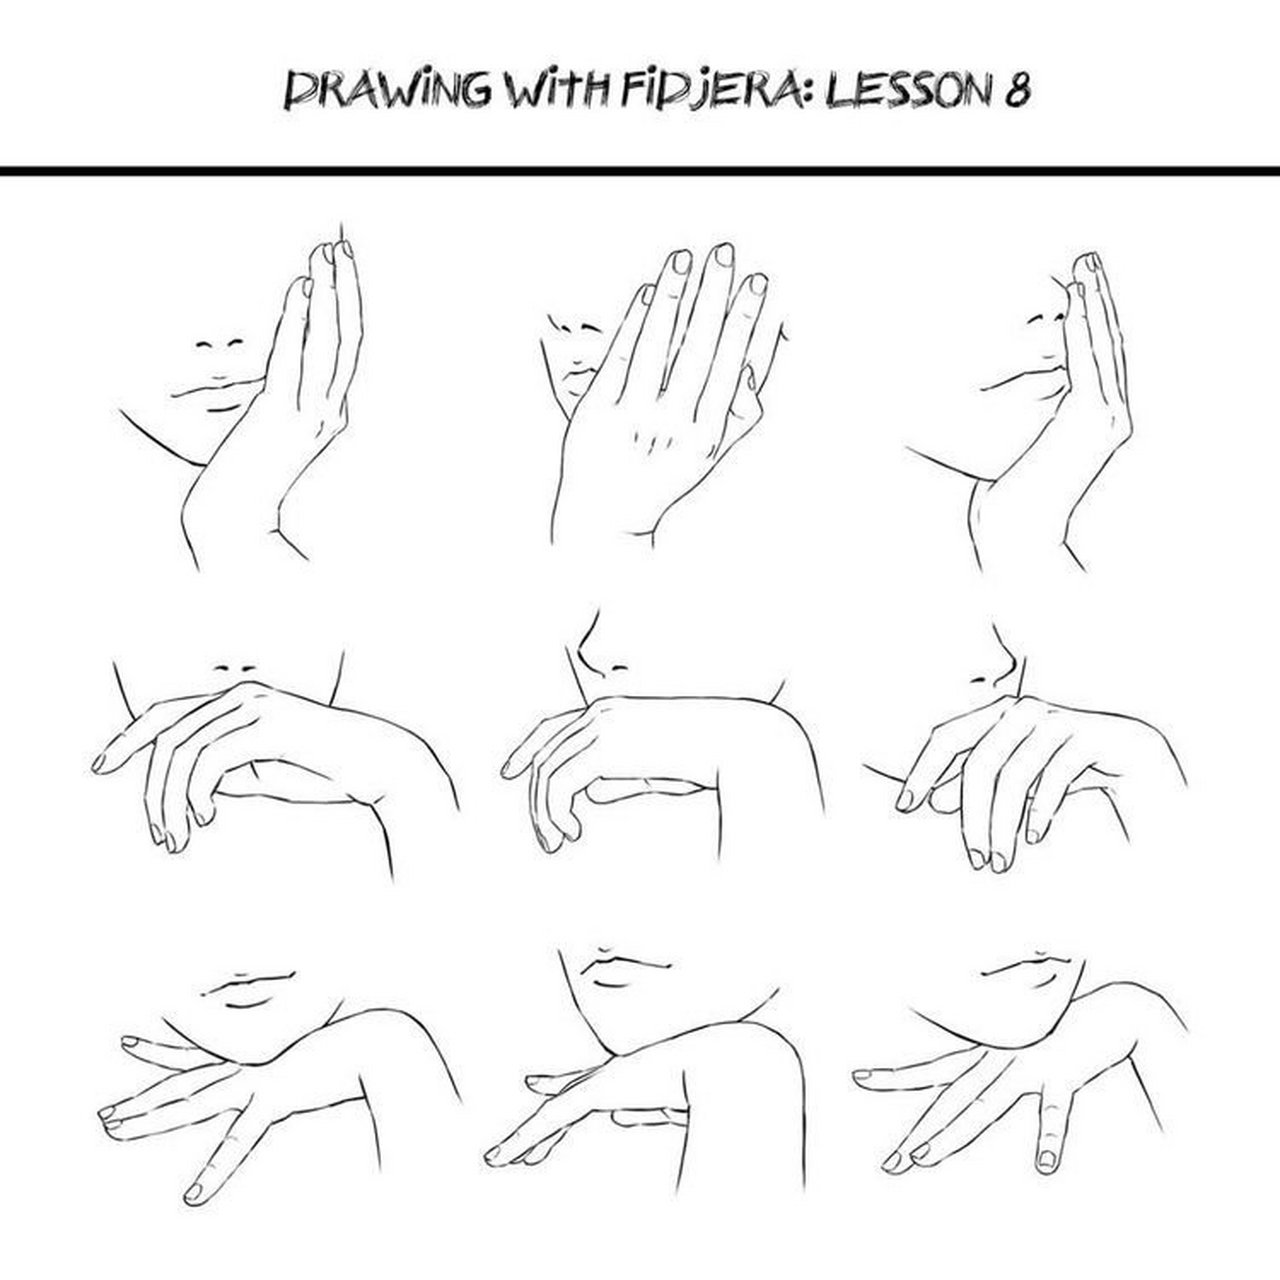 学绘画 手部绘画教程,手部绘画参考素材 一些常用的手部动作参考#学